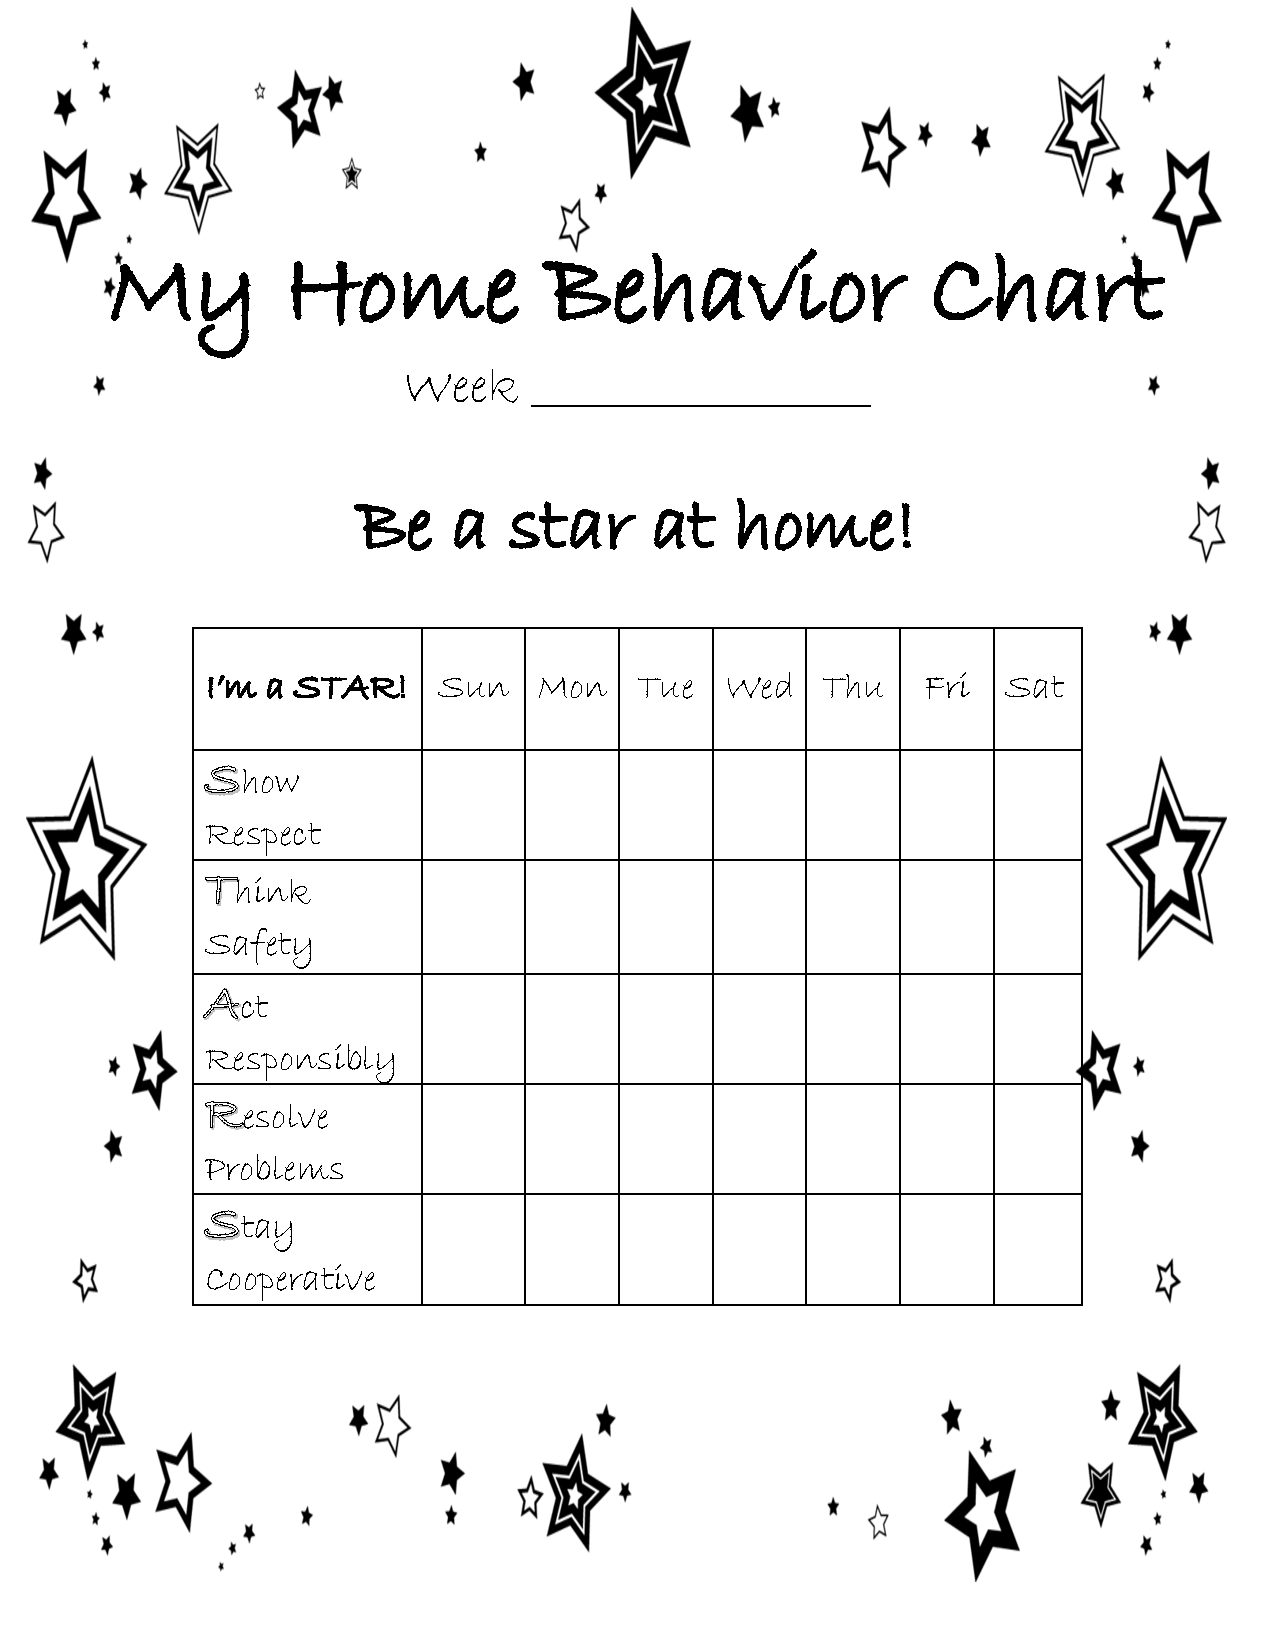 Daily Behavior Chart For Home - BehaviorChart.net